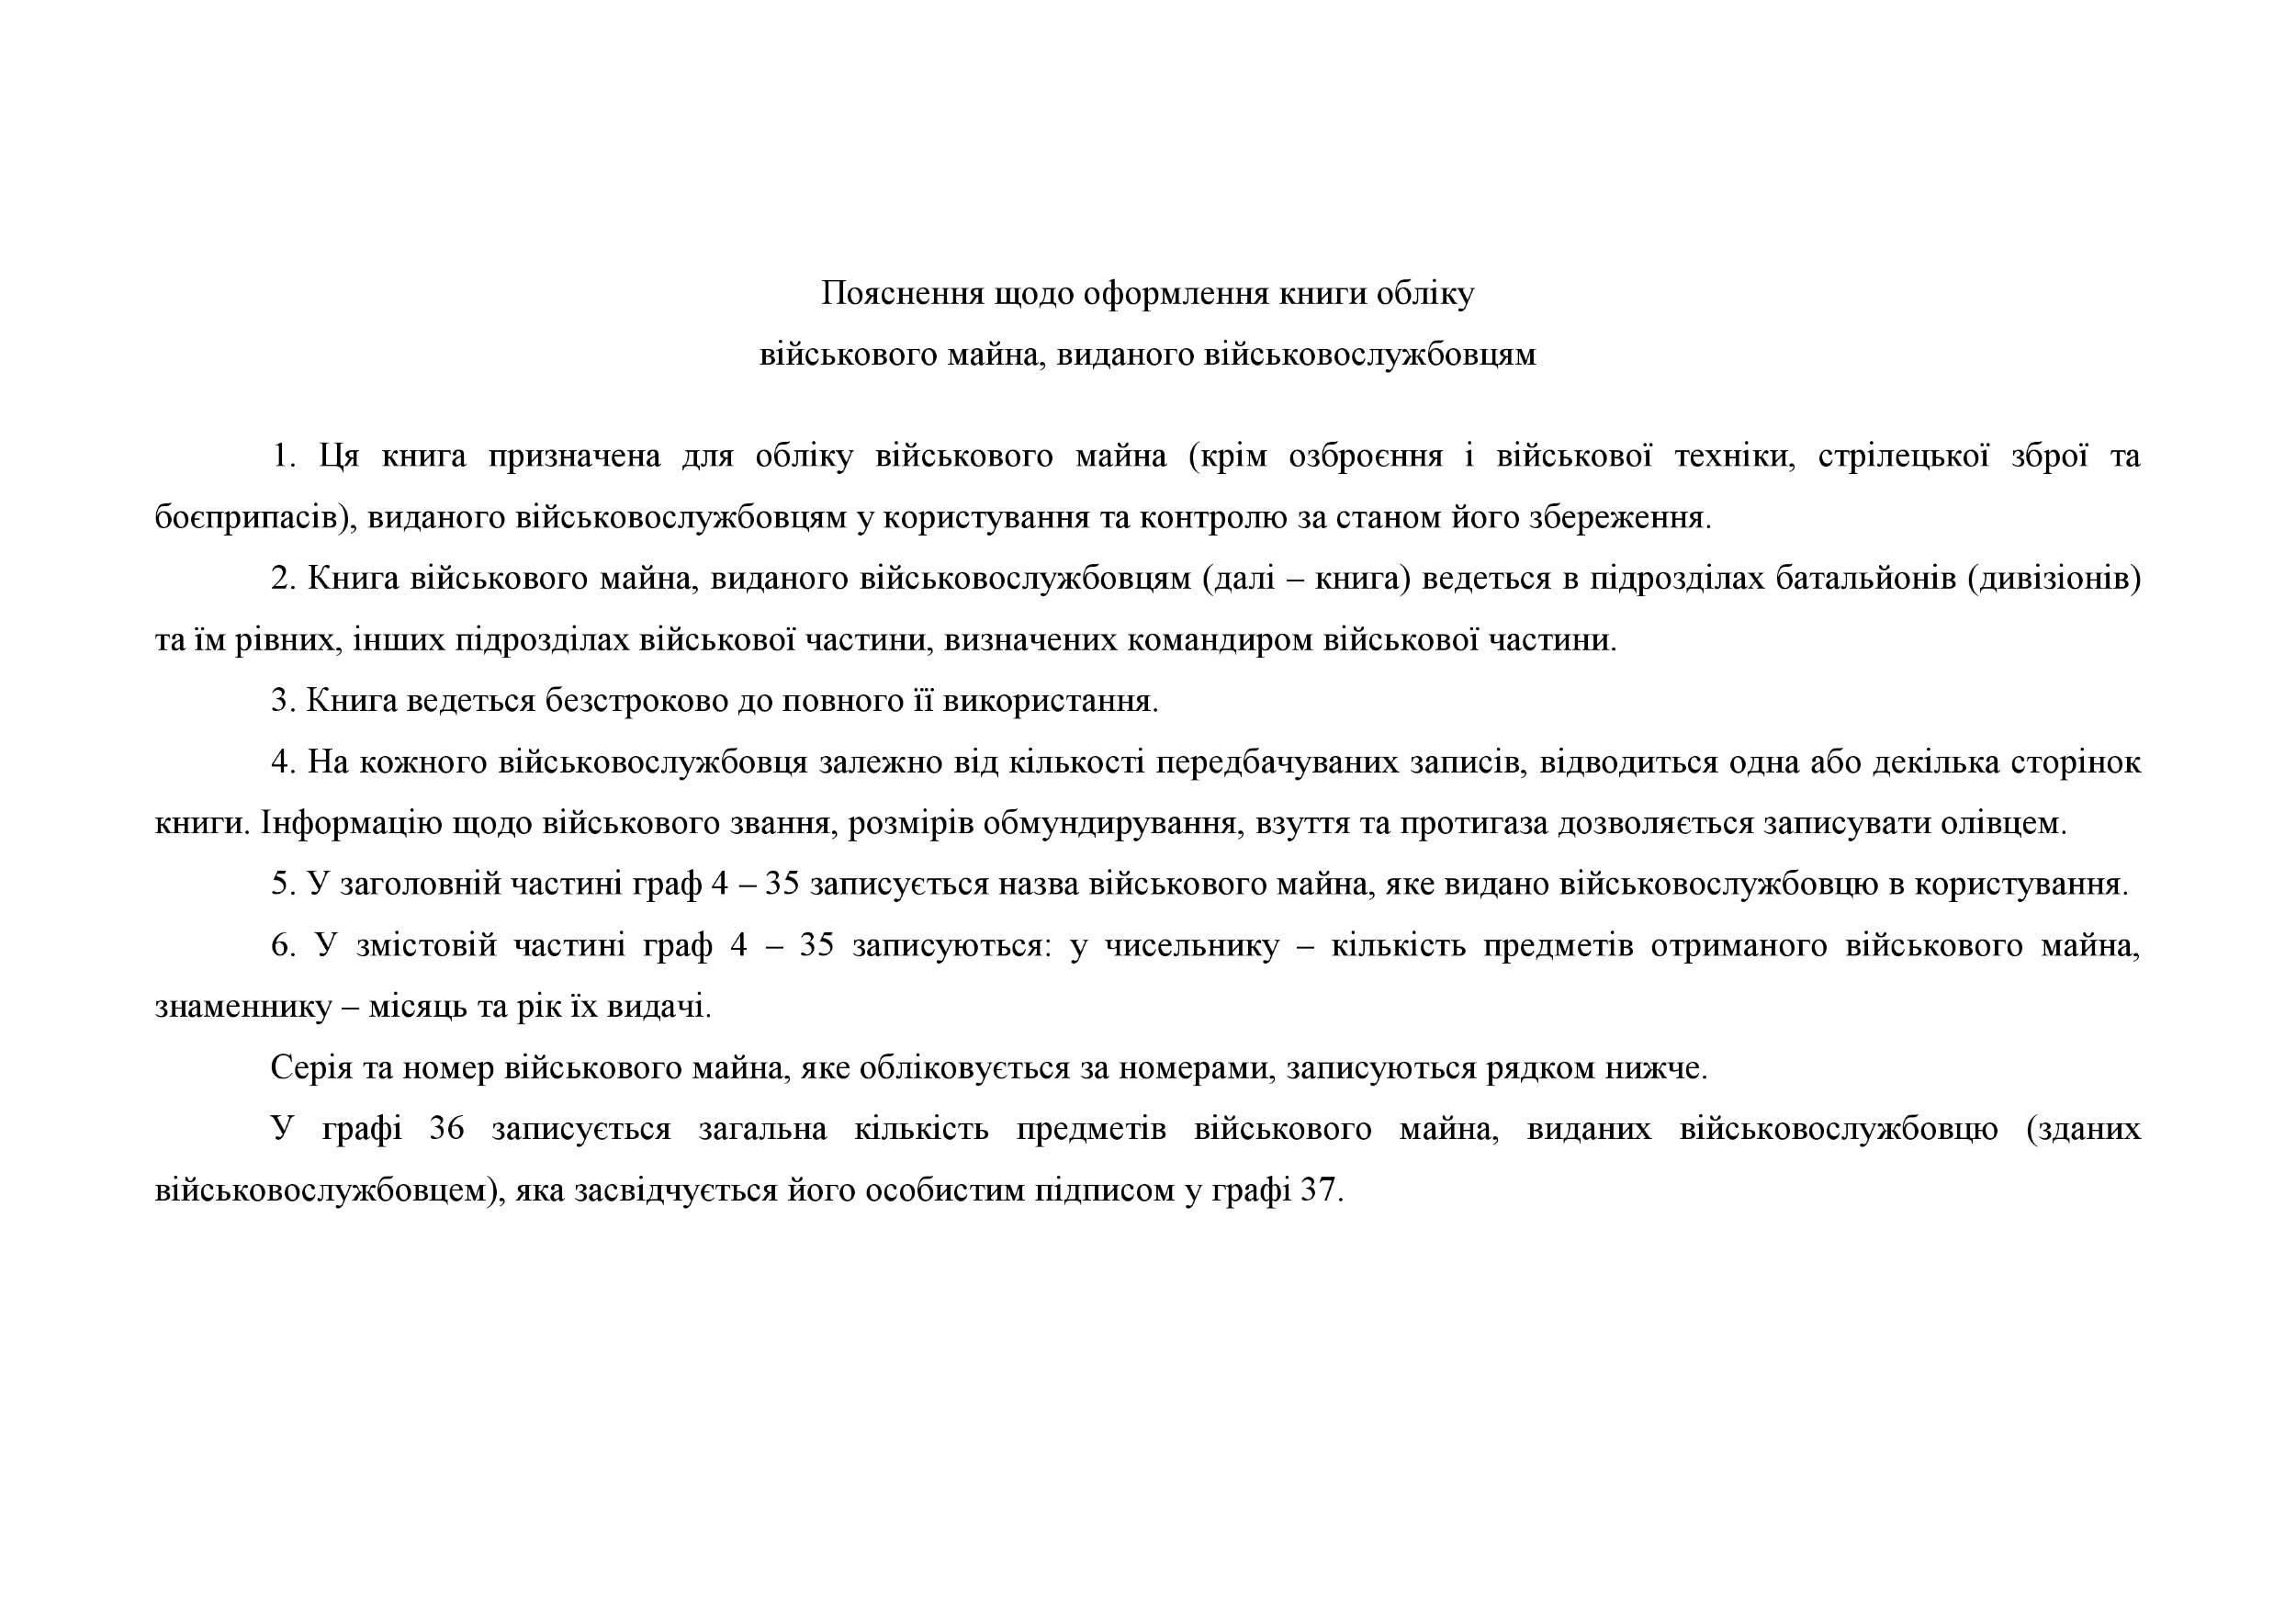 Книга обліку військового майна виданого військовослужбовцям, додаток 53. Автор — Міністерство оборони України. 